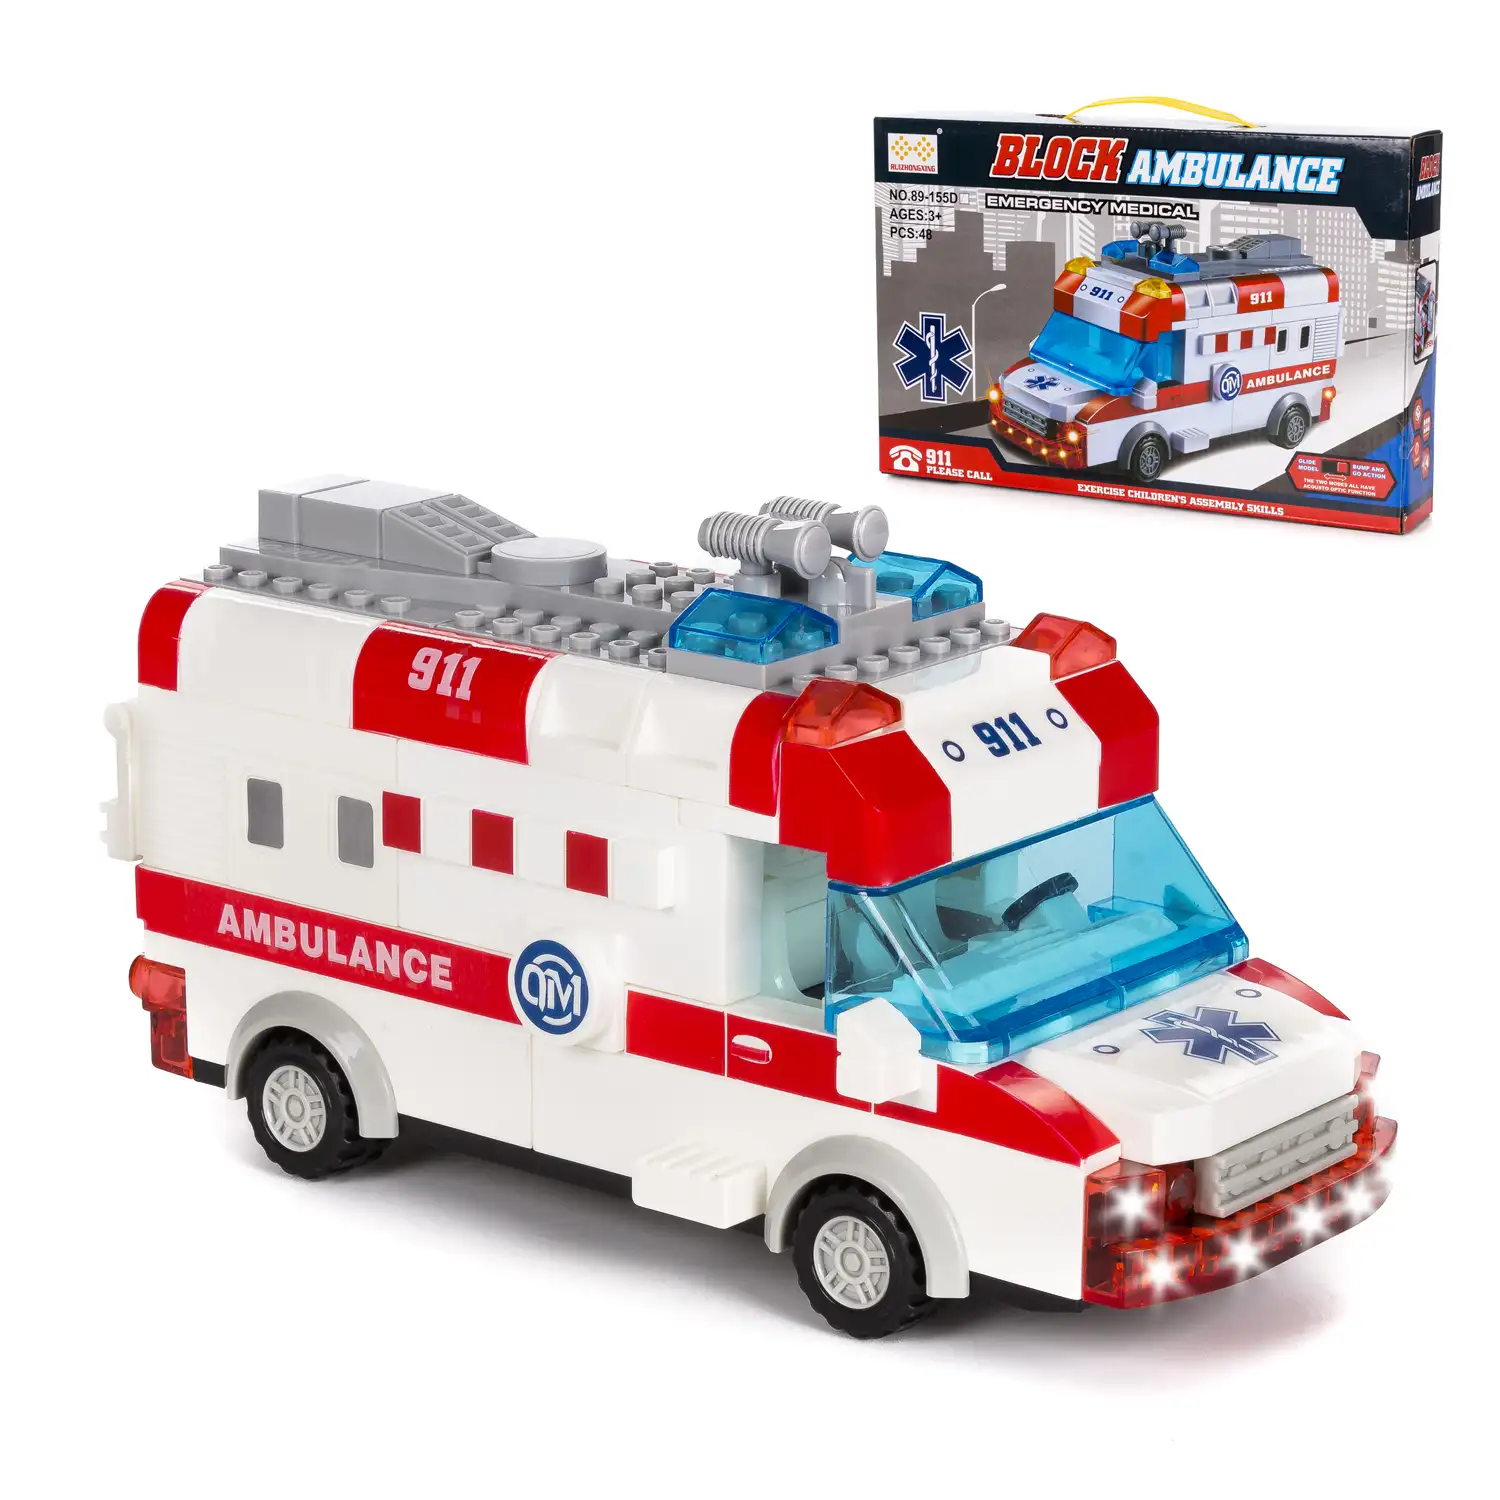 Ambulancia con luces y efectos de sonido. Para construir, 48 piezas. Modo automático de funcionamiento 360°.